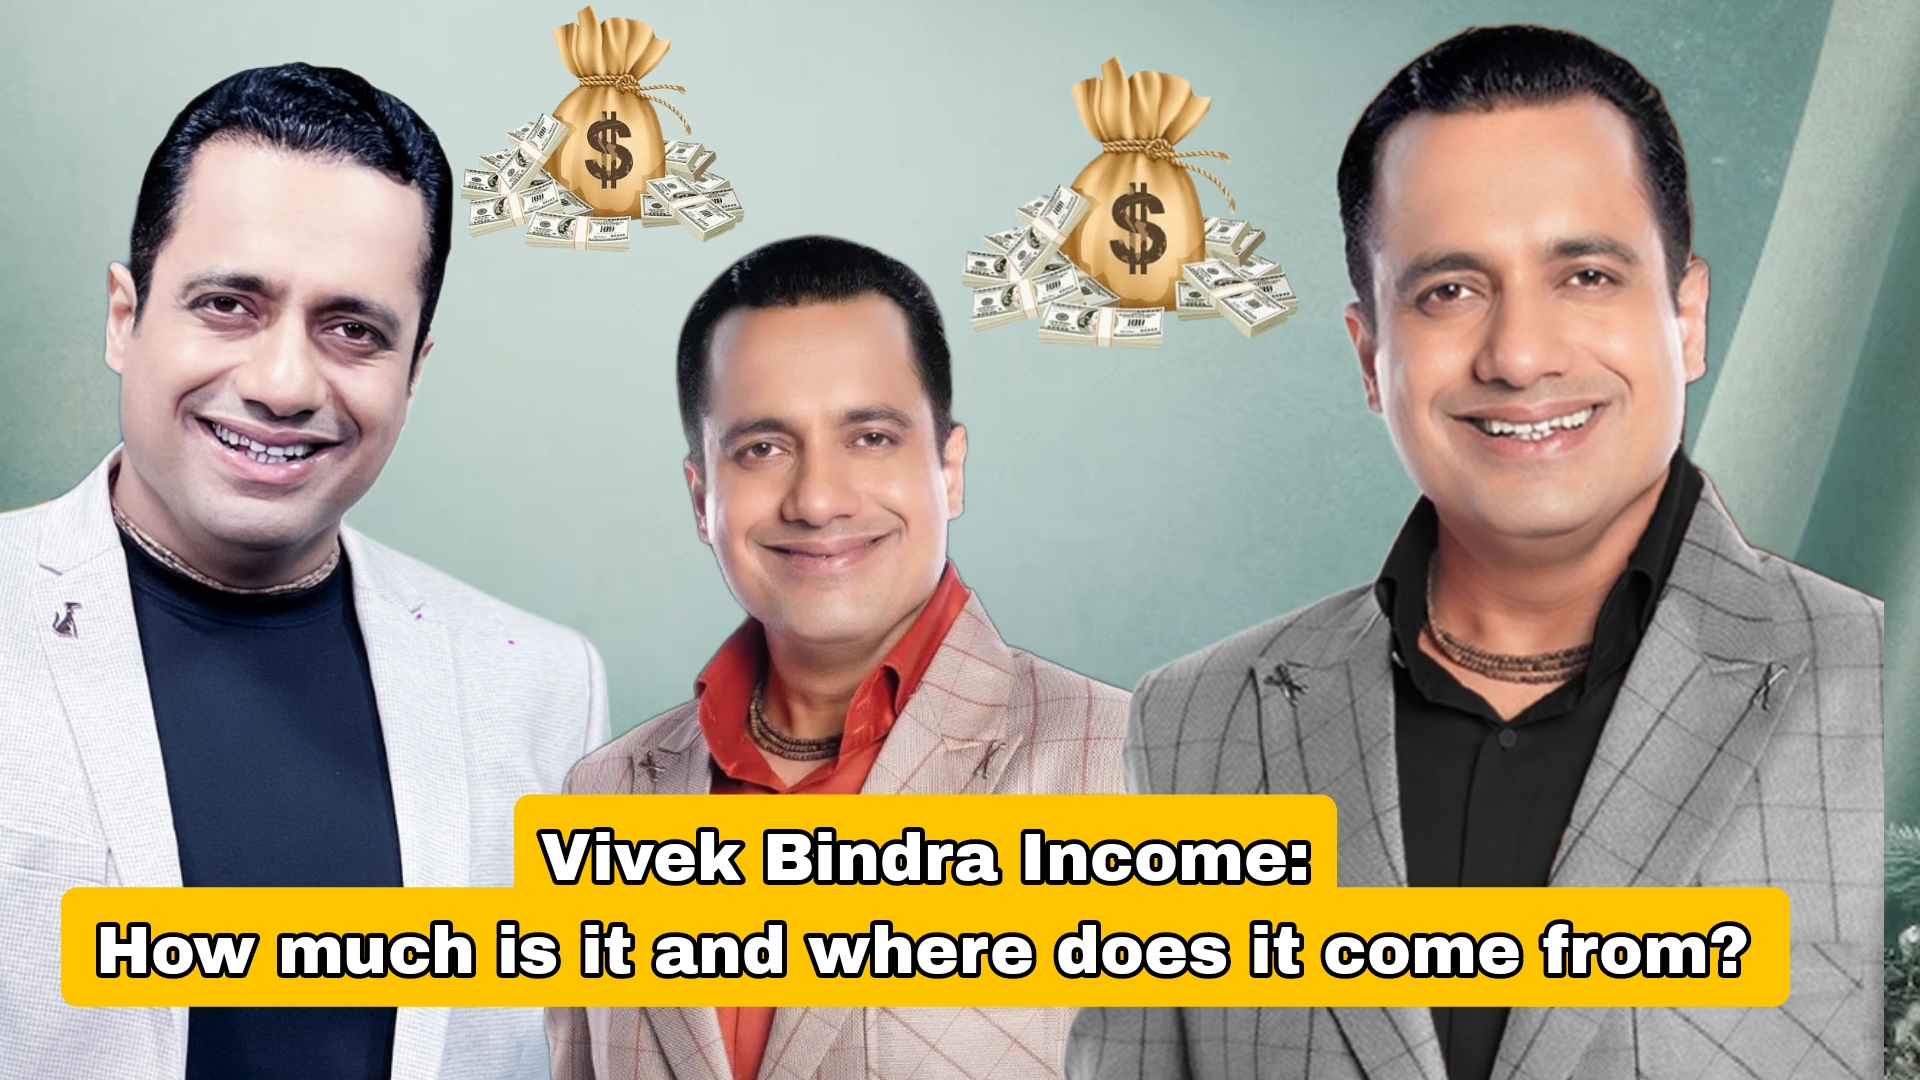 How Does Vivek Bindra Earn? Is He A Crorepati?